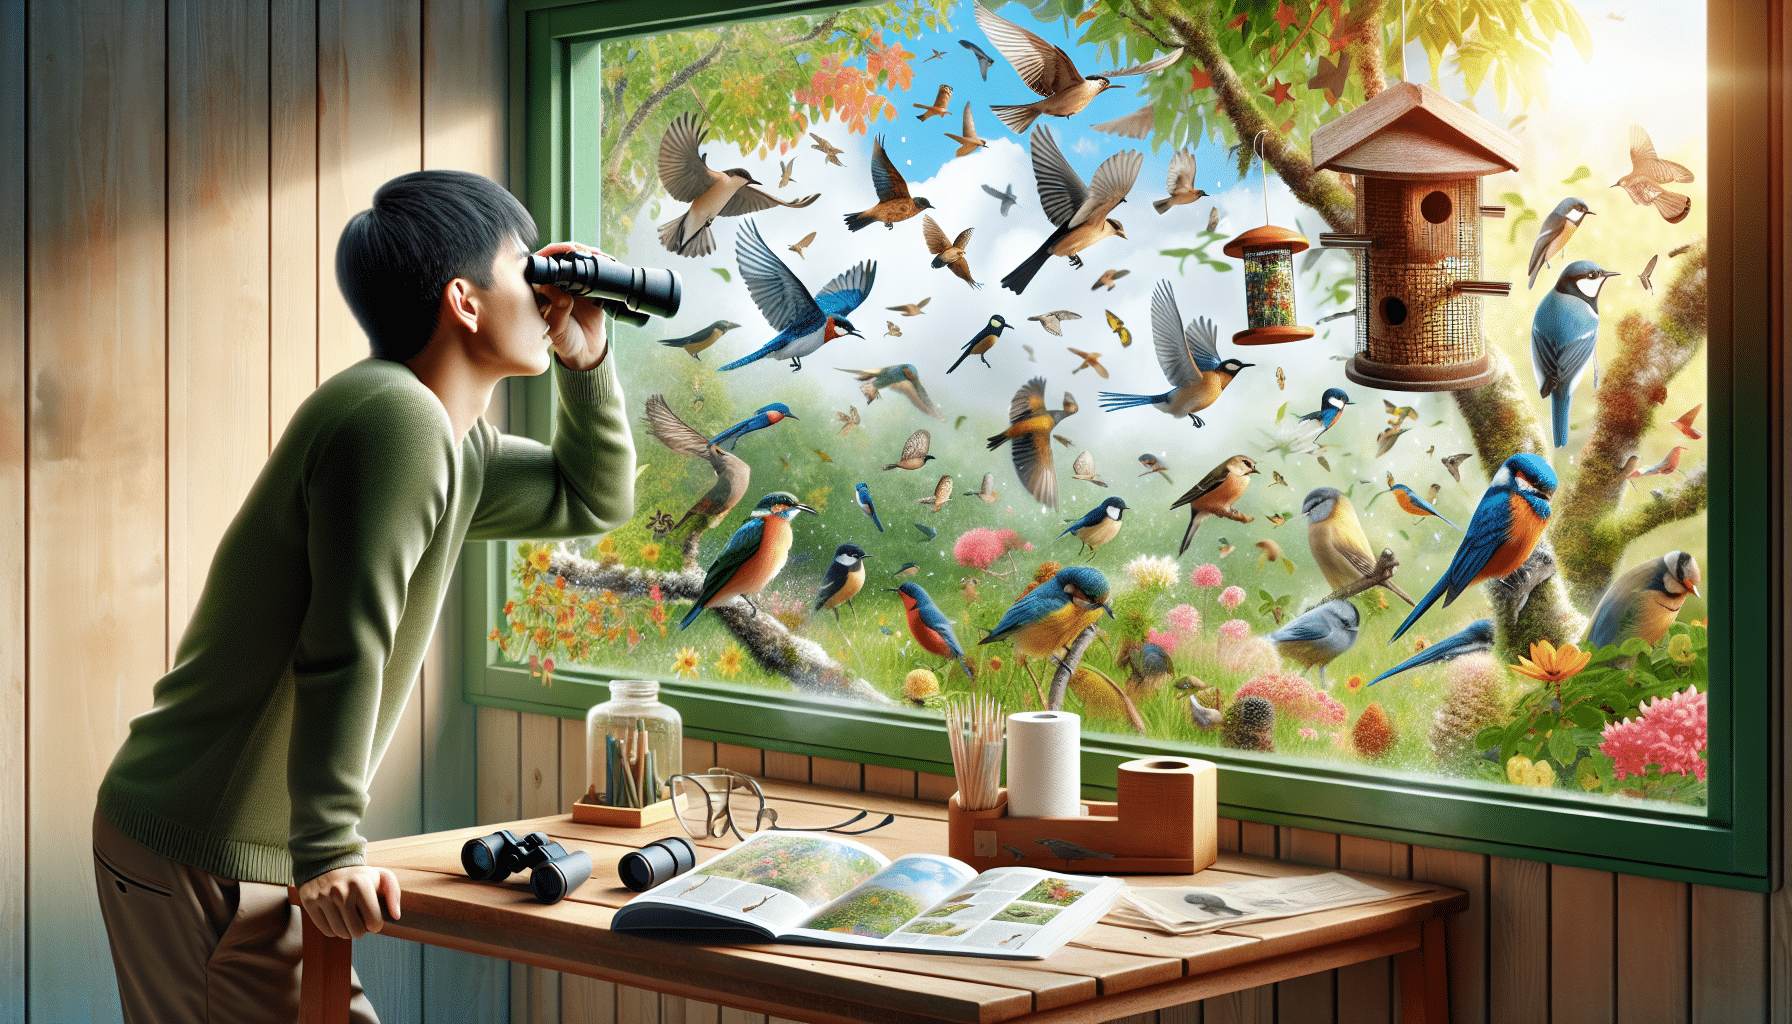 Doğanın büyüsünü ve yeni başlayanların arka bahçede kuş gözlemciliği yoluyla hayatlarını nasıl değiştirdiğini keşfedin. Bu hobinin sağlığınız ve doğal dünyayla bağlantınız üzerinde nasıl derin bir etkisi olabileceğini öğrenin.